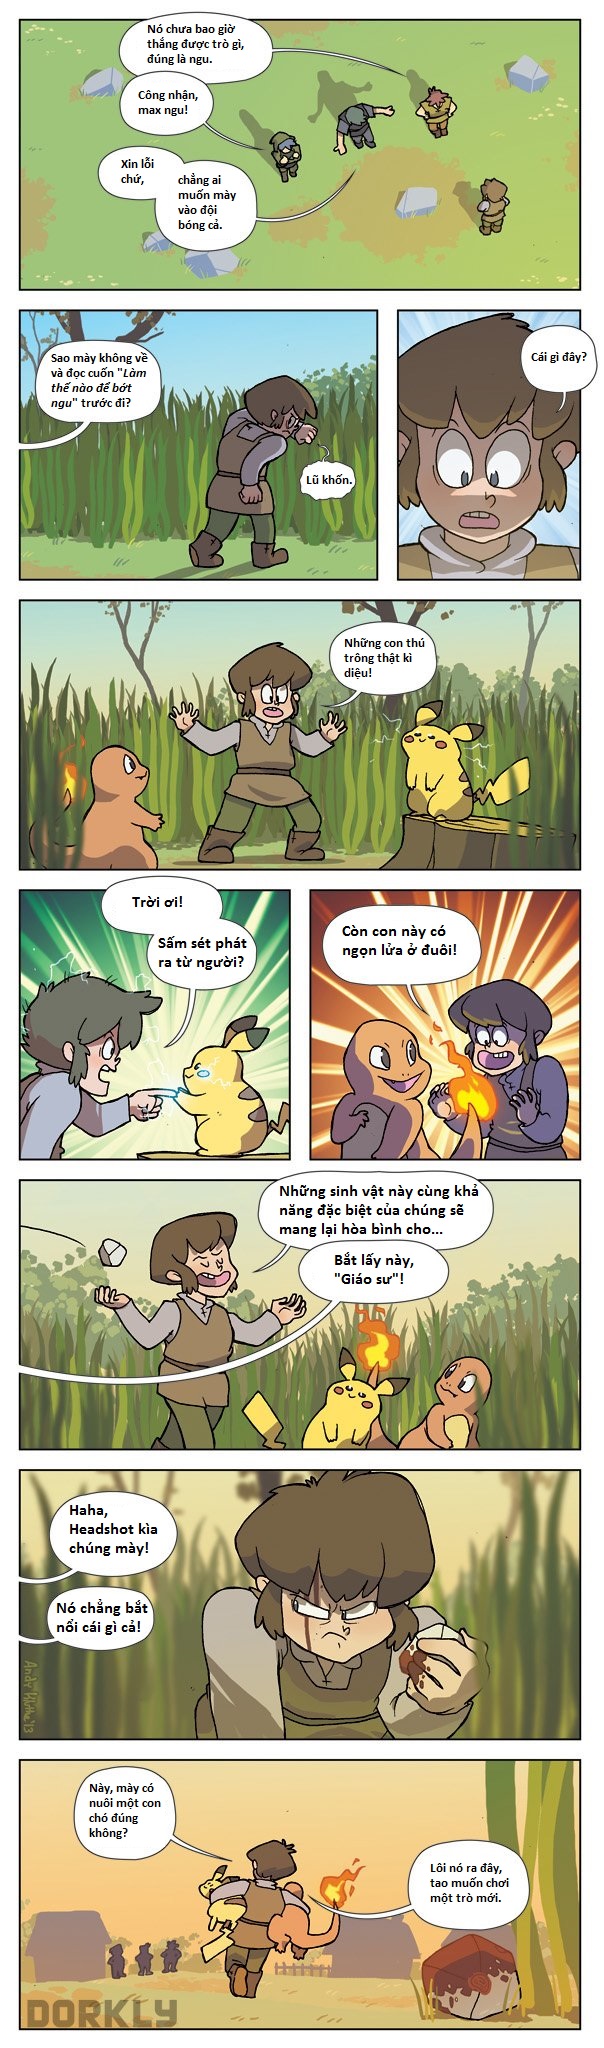 
Trong các tựa game lẫn phim ảnh về Pokemon, chúng ta chỉ thấy các trainer sử dụng Pokemon của mình vào một mục đích duy nhất là chiến đấu
